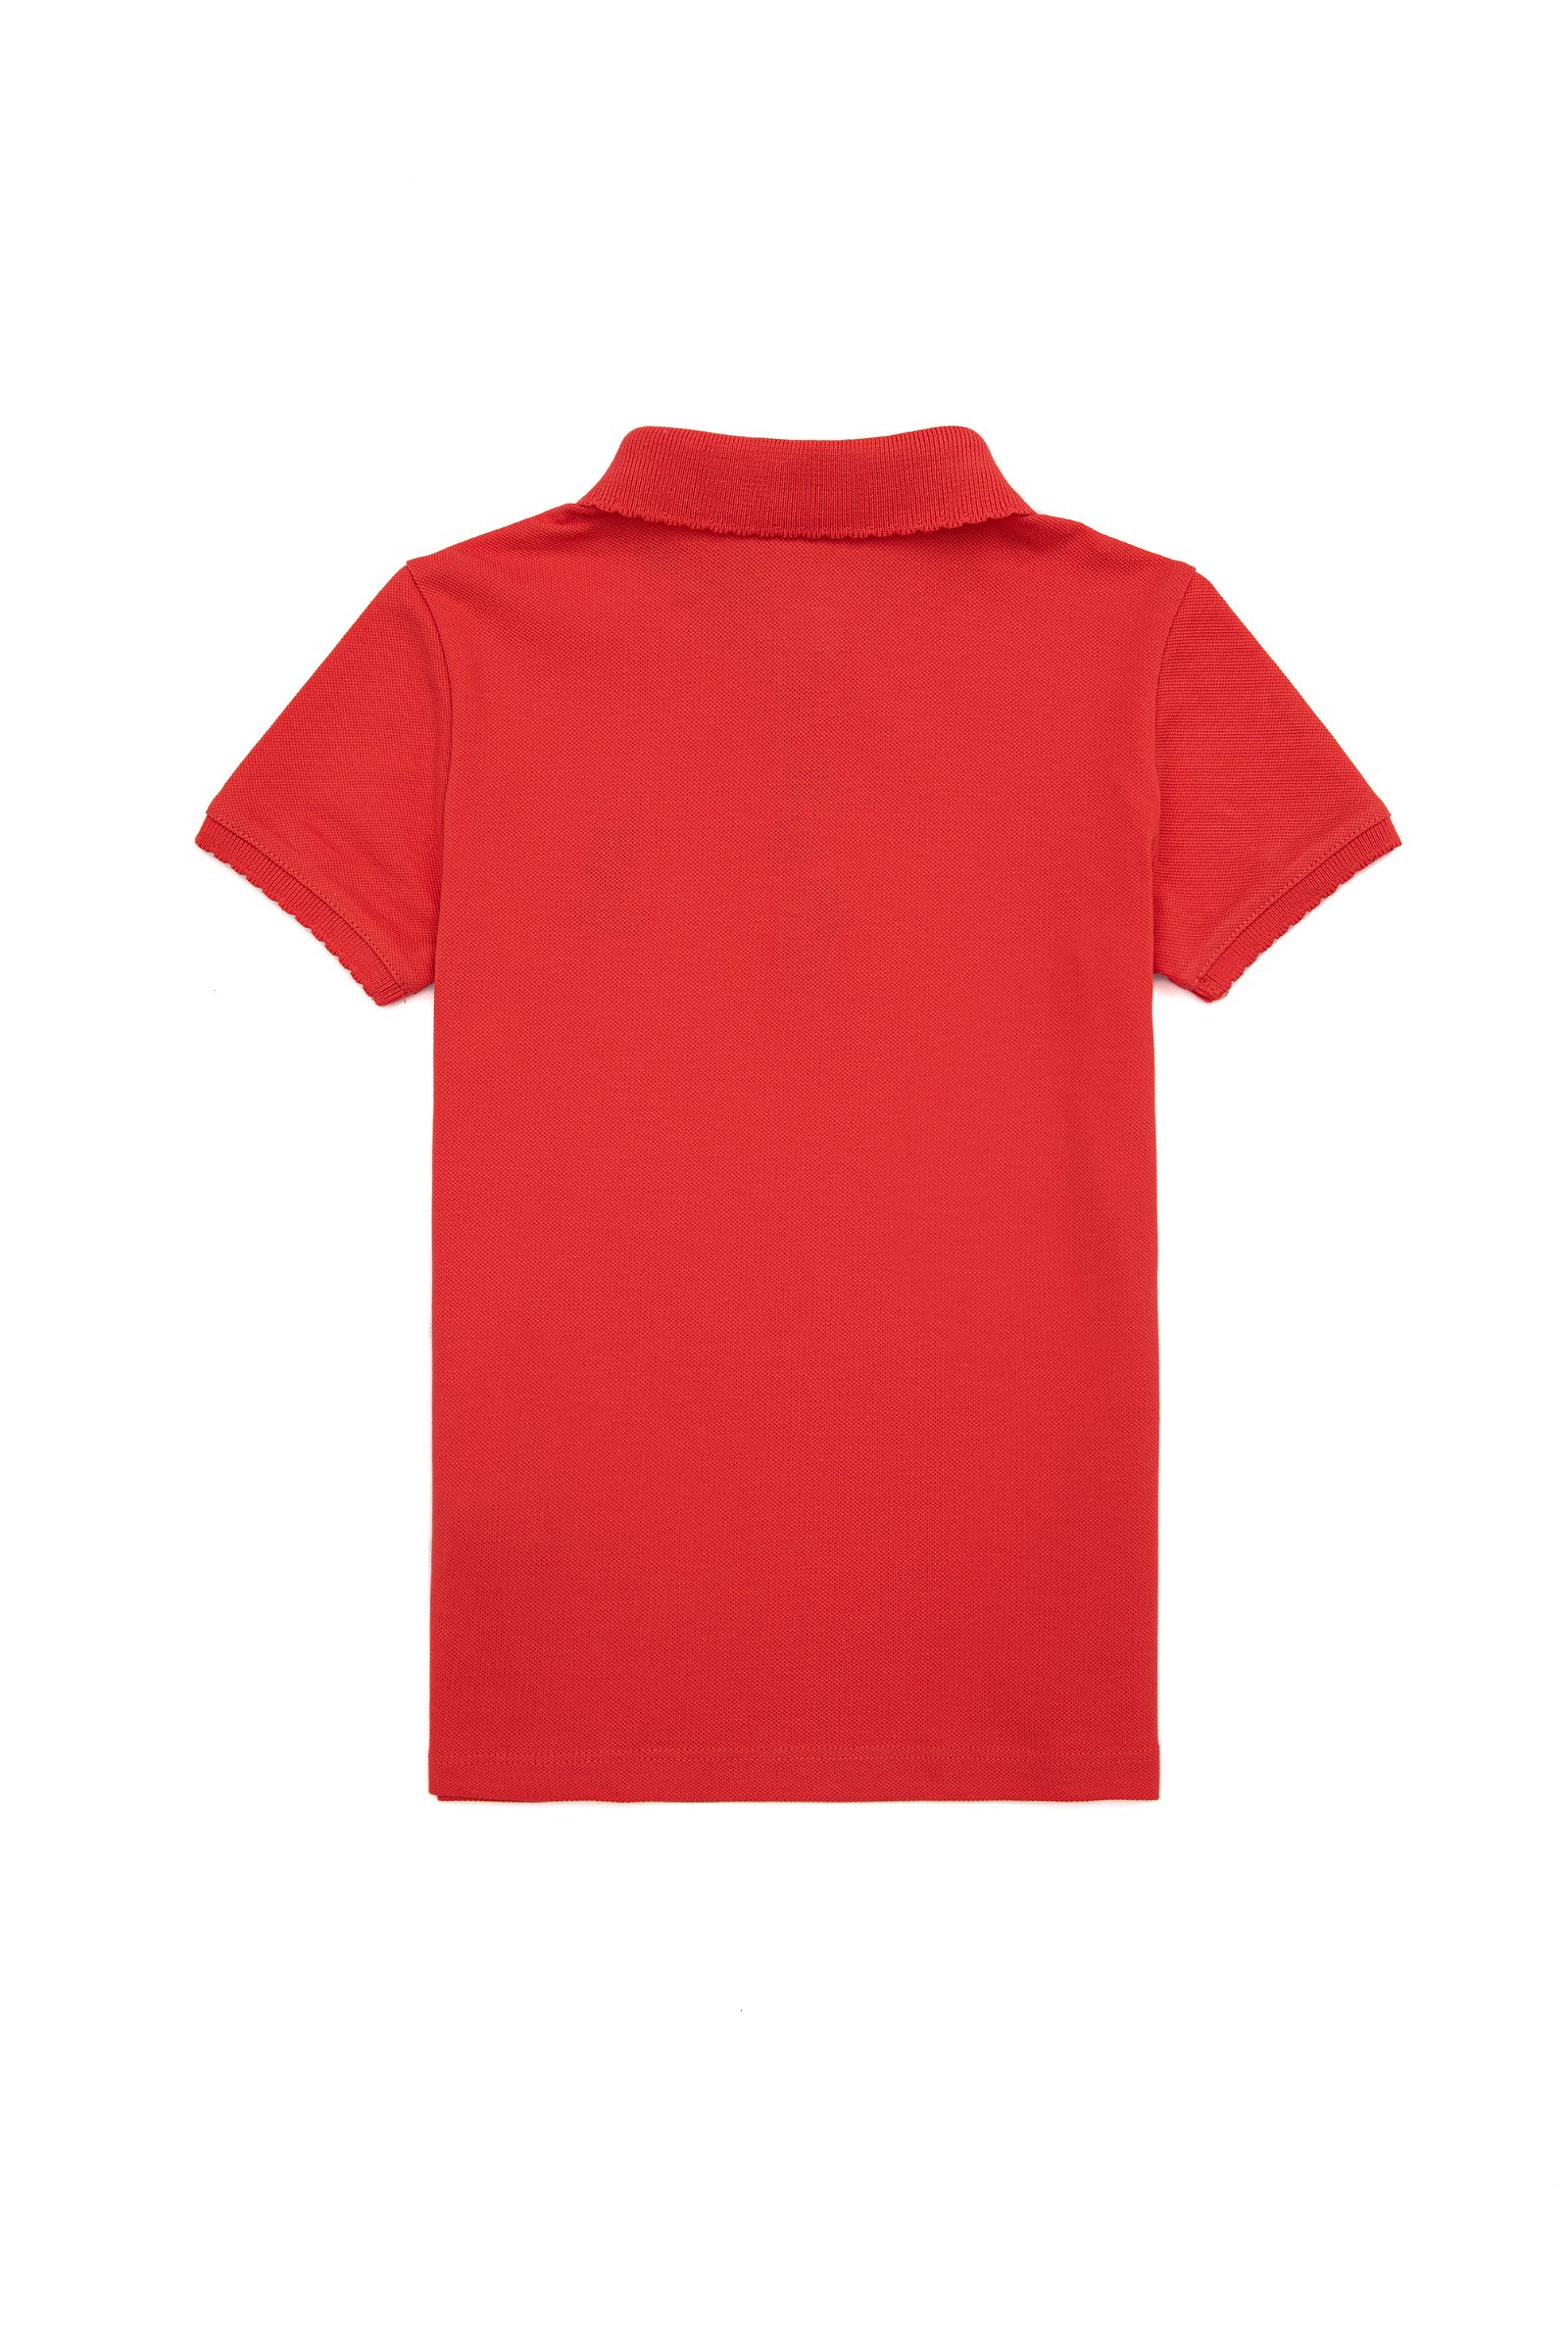 تی شرت  قرمز  استاندارد فیت  دخترانه یو اس پولو